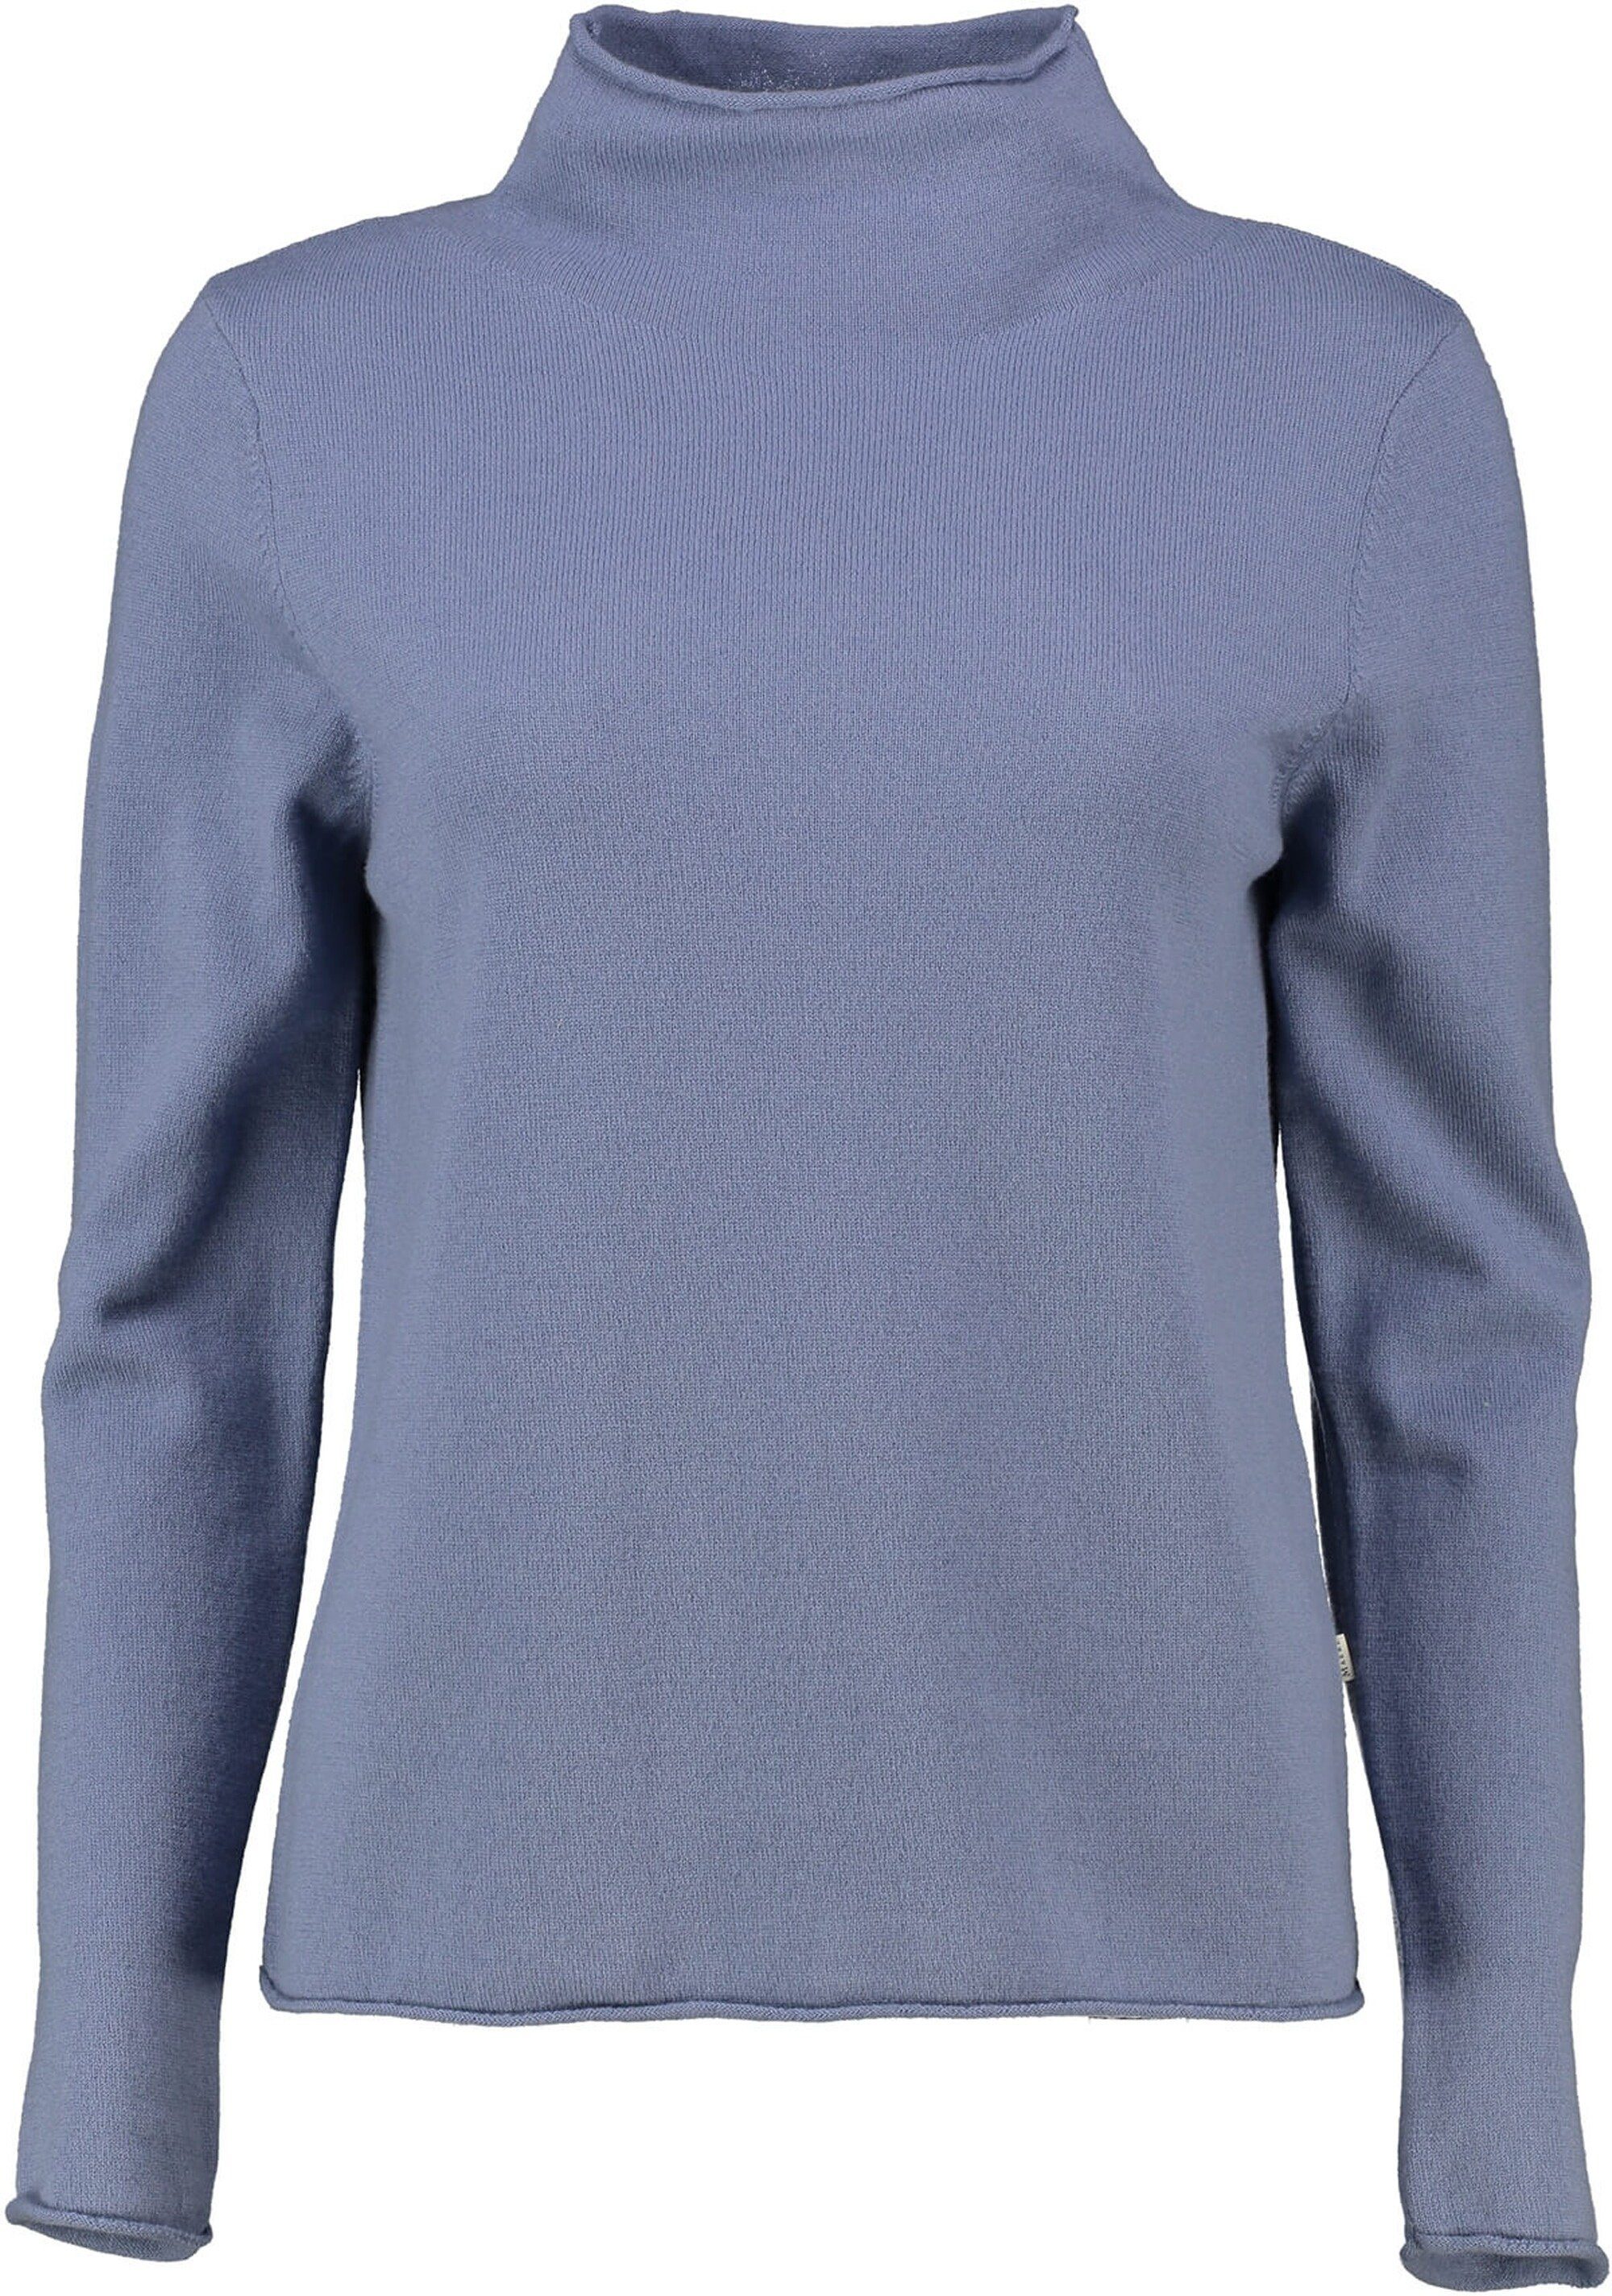 MAERZ hochwertiger Stehkragenpullover Stehkragen-Pullover blau aus Merinowolle MAERZ Muenchen